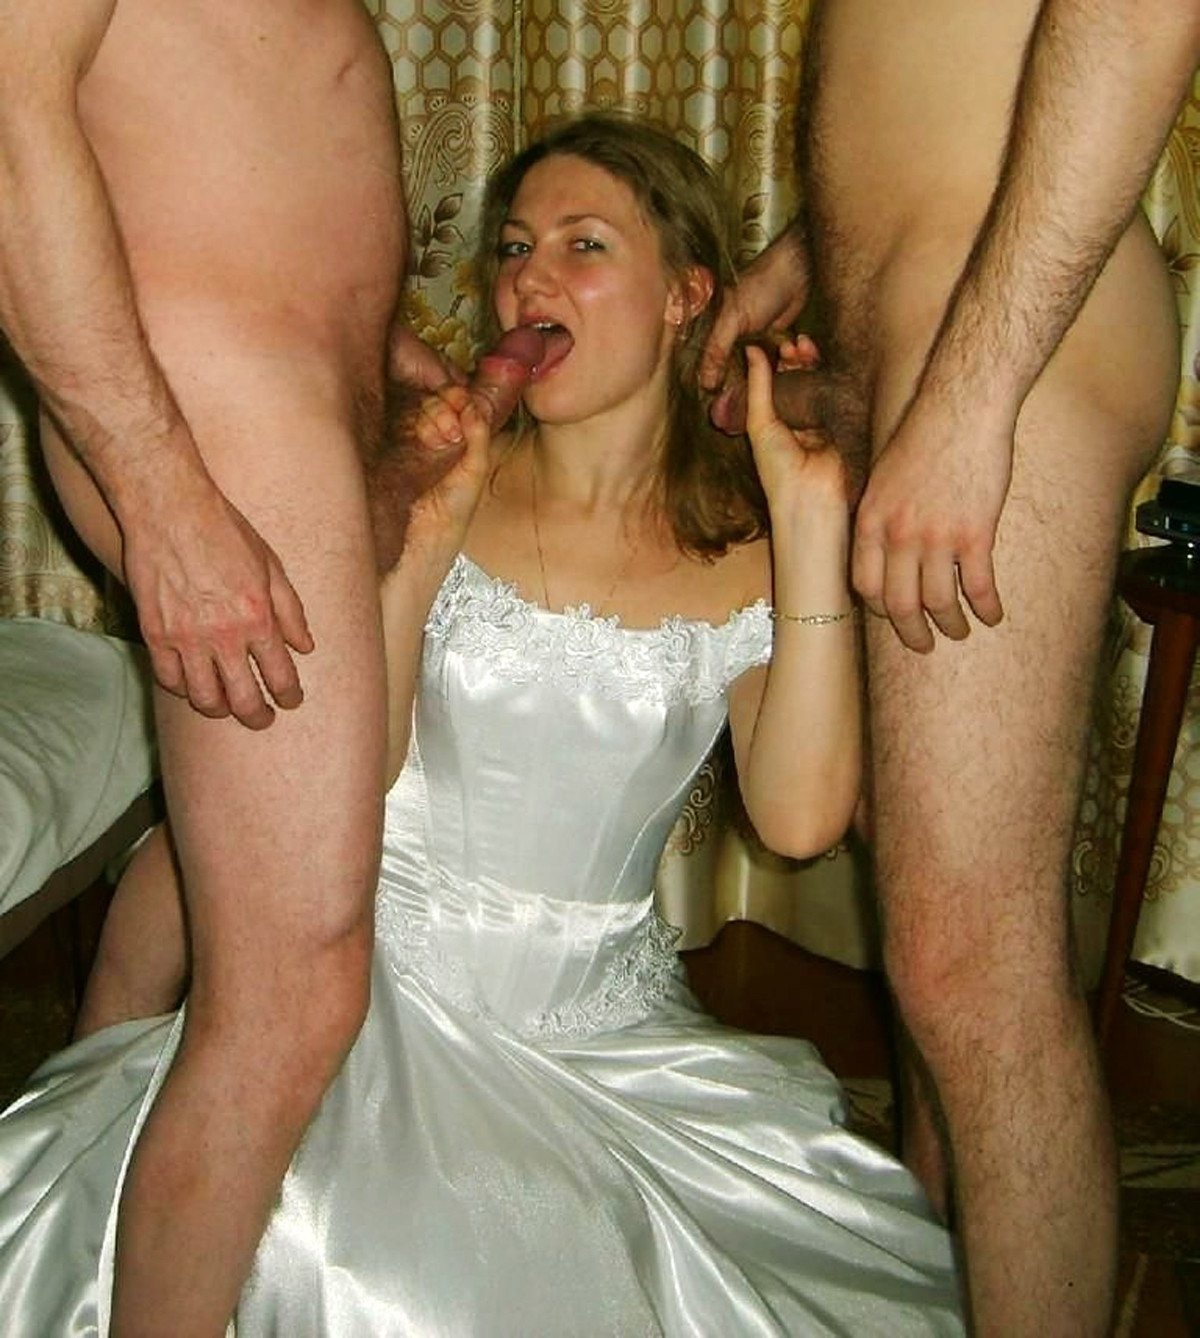 Групповое порно после свадьбы порно фото